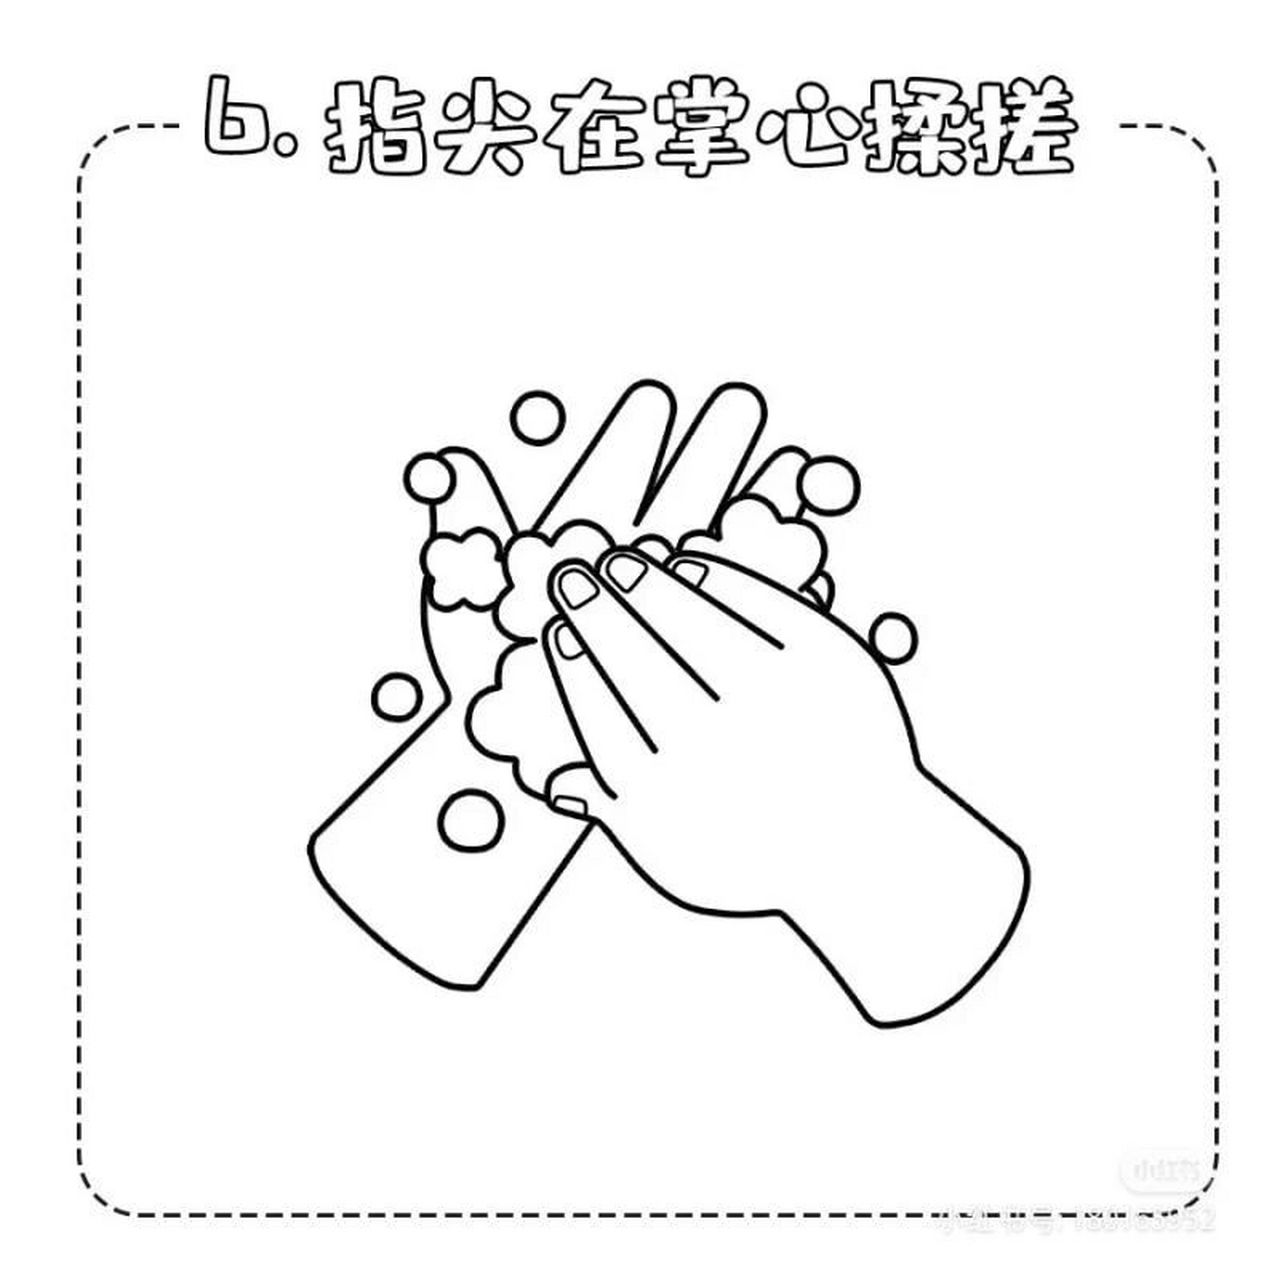 洗手七步法简笔画可爱图片